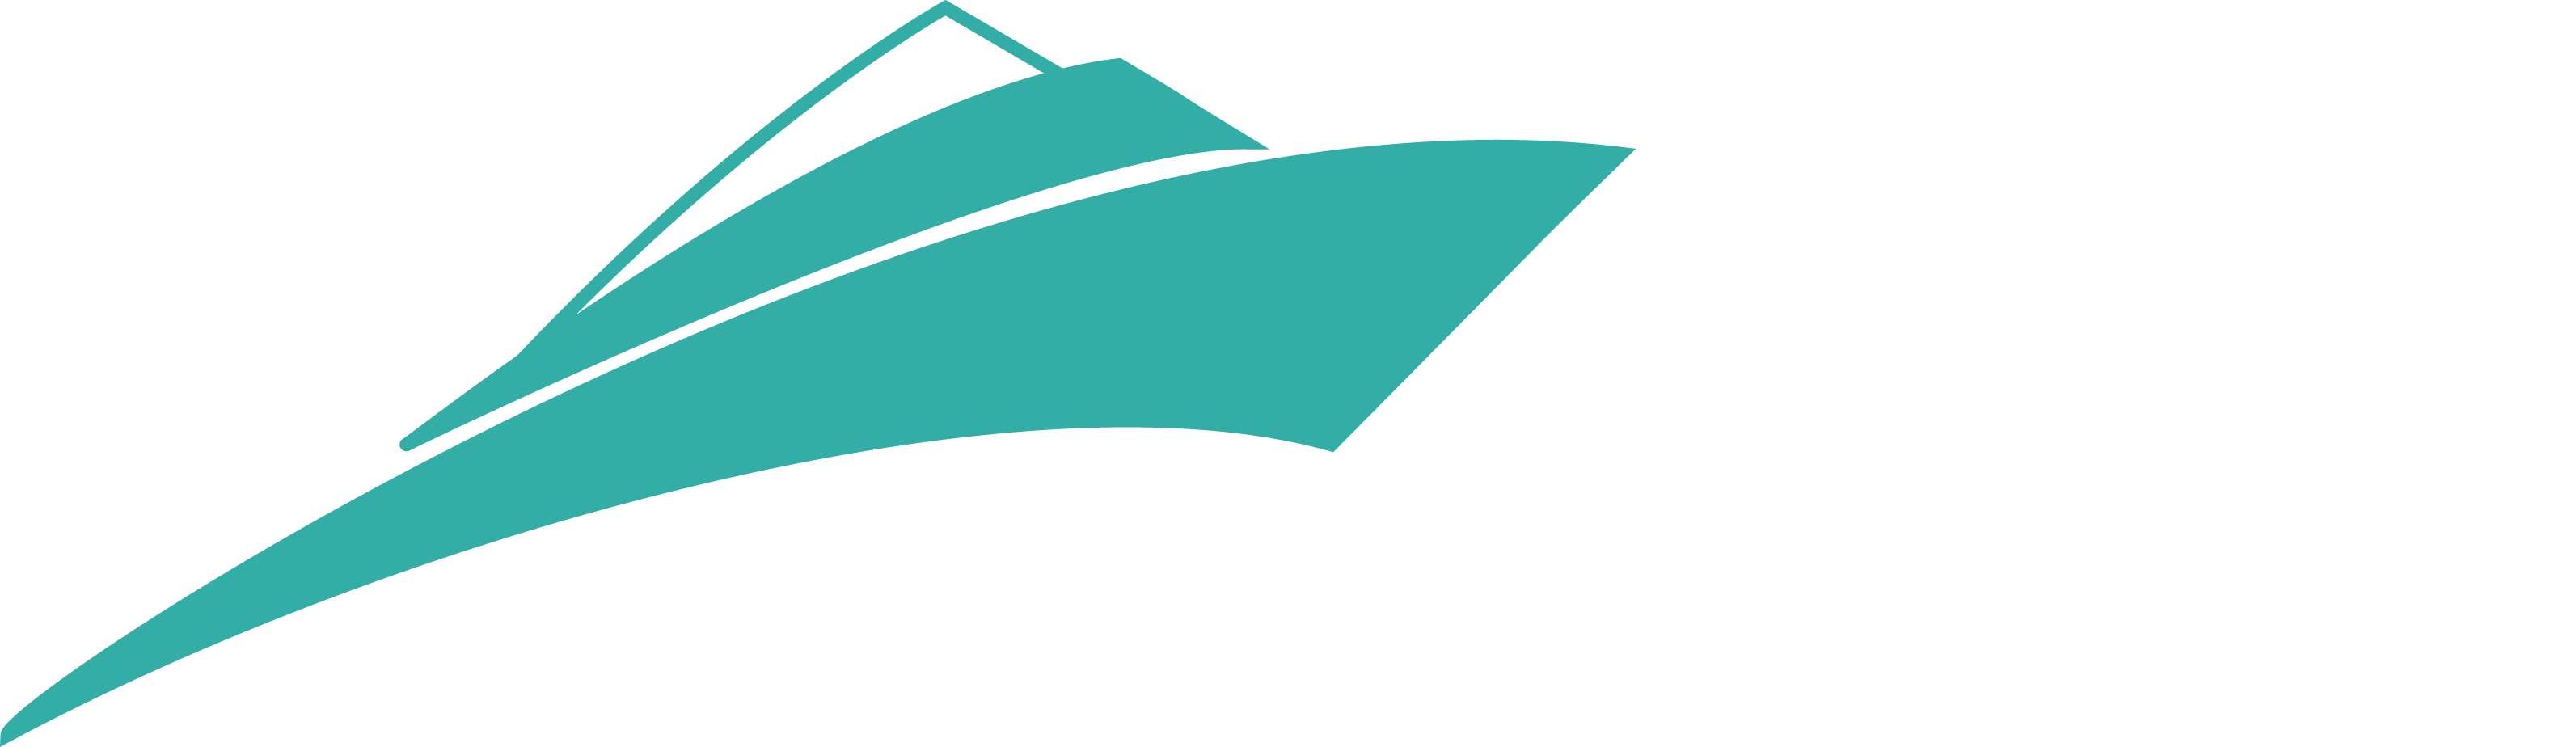 x yacht priser